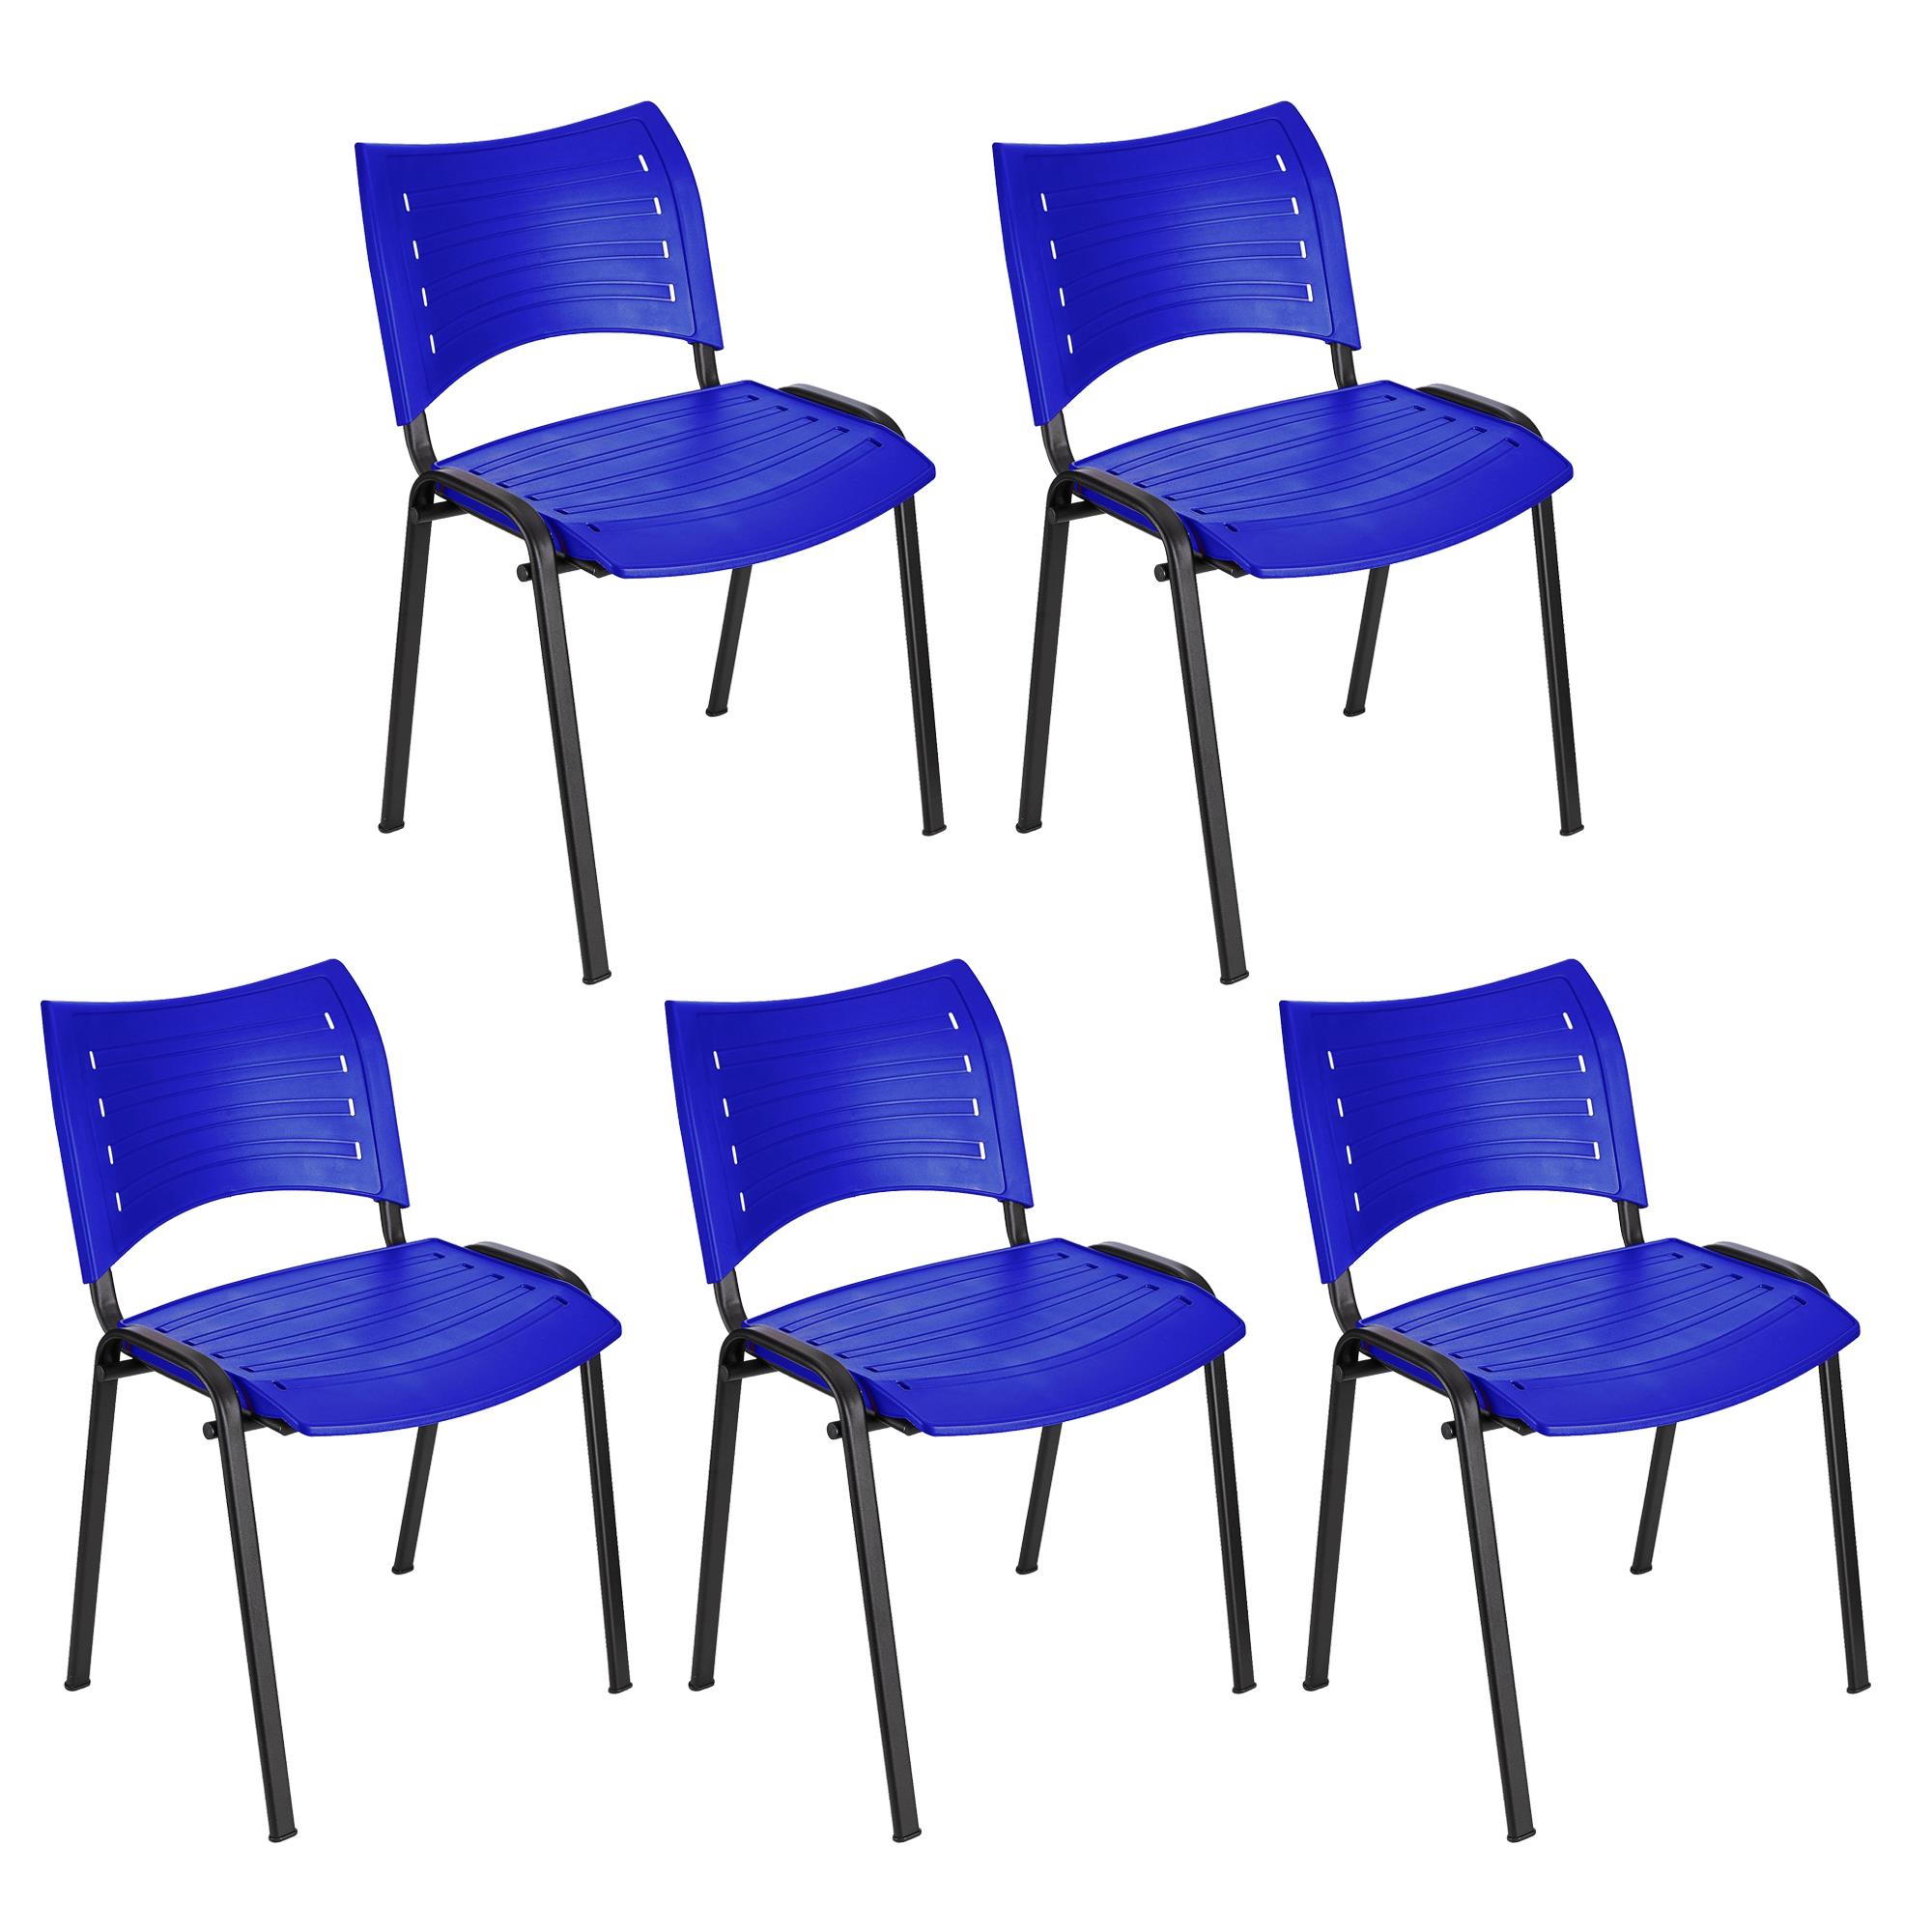 Lote 5 Cadeiras de Visita ELVA, Confortável e Prática, Pernas Pretas, Cor Azul